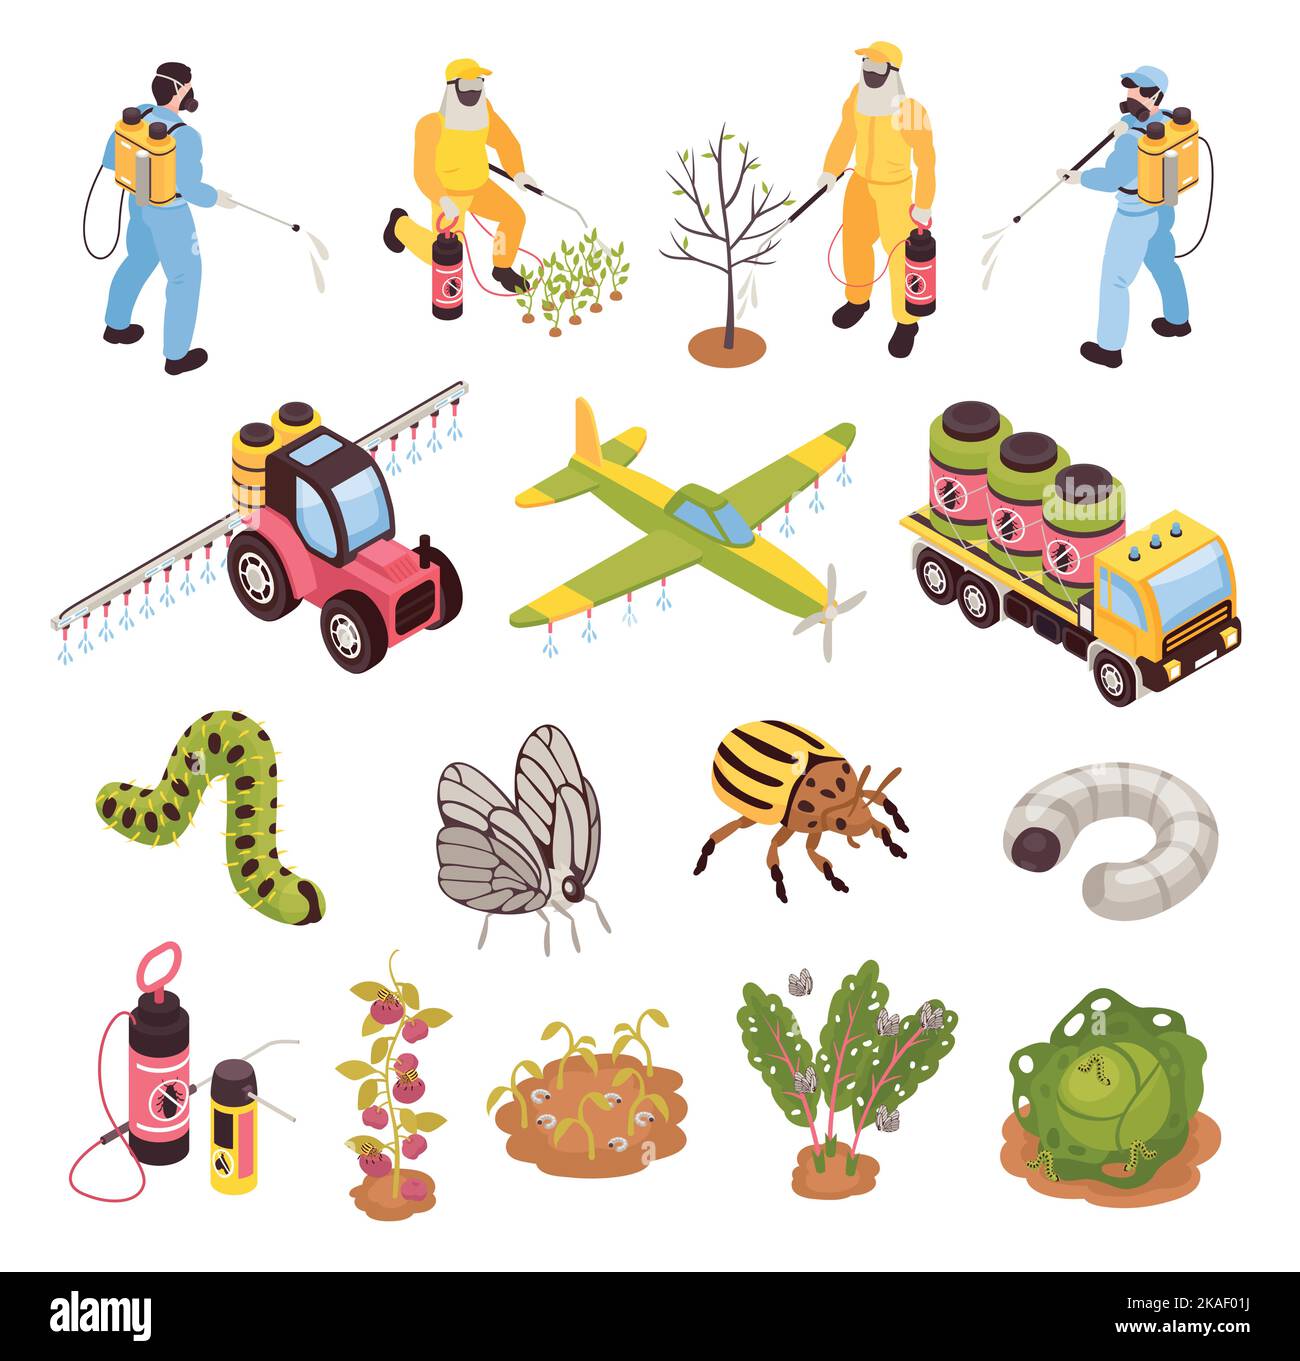 Los iconos de la agricultura isométrica y la lucha contra las plagas de la agricultura y la agricultura argicultura establecen una ilustración de vectores aislados Ilustración del Vector